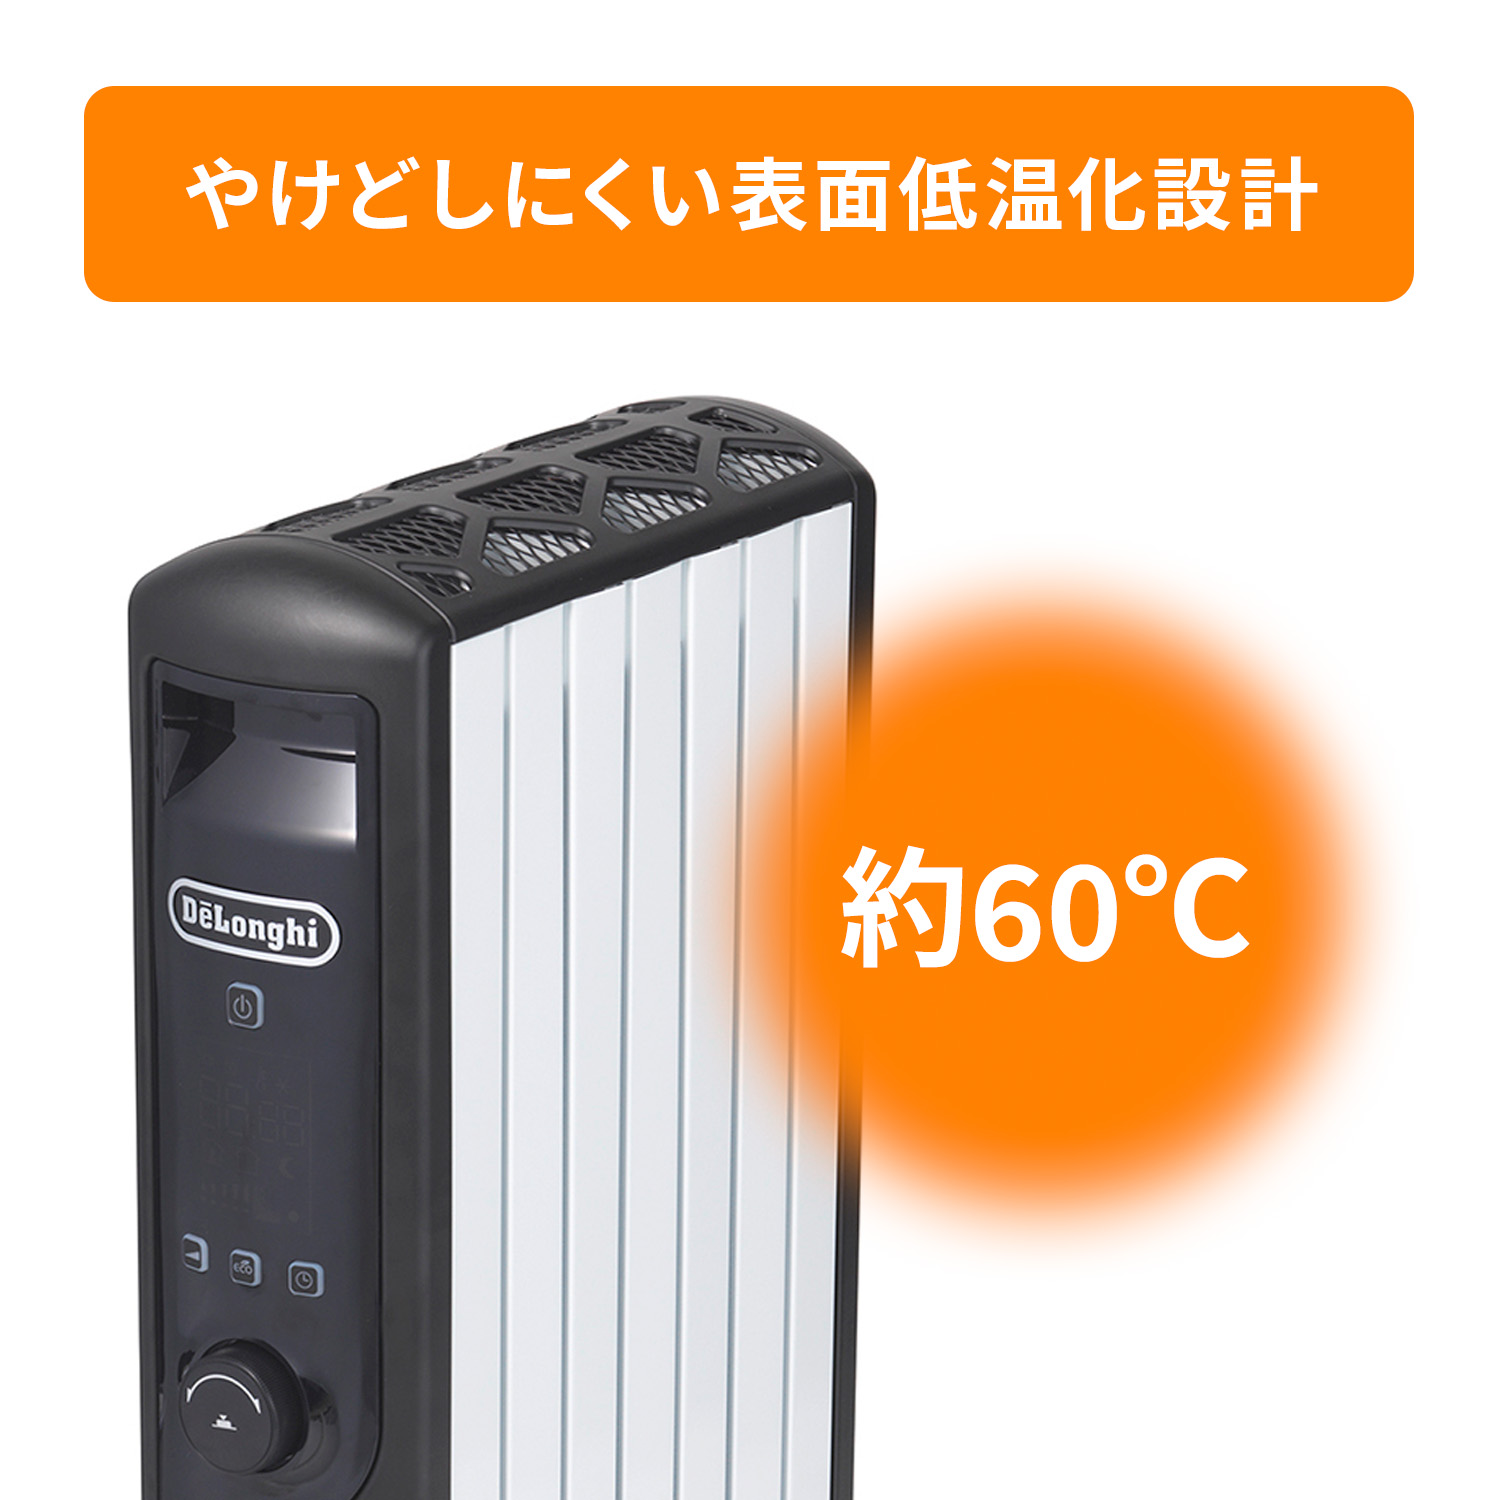 デロンギ マルチダイナミックヒーター MDHU09-BKの製品情報 | ゼロ風暖房デロンギ ヒーター 風が出ないのに、部屋全体が暖かい。